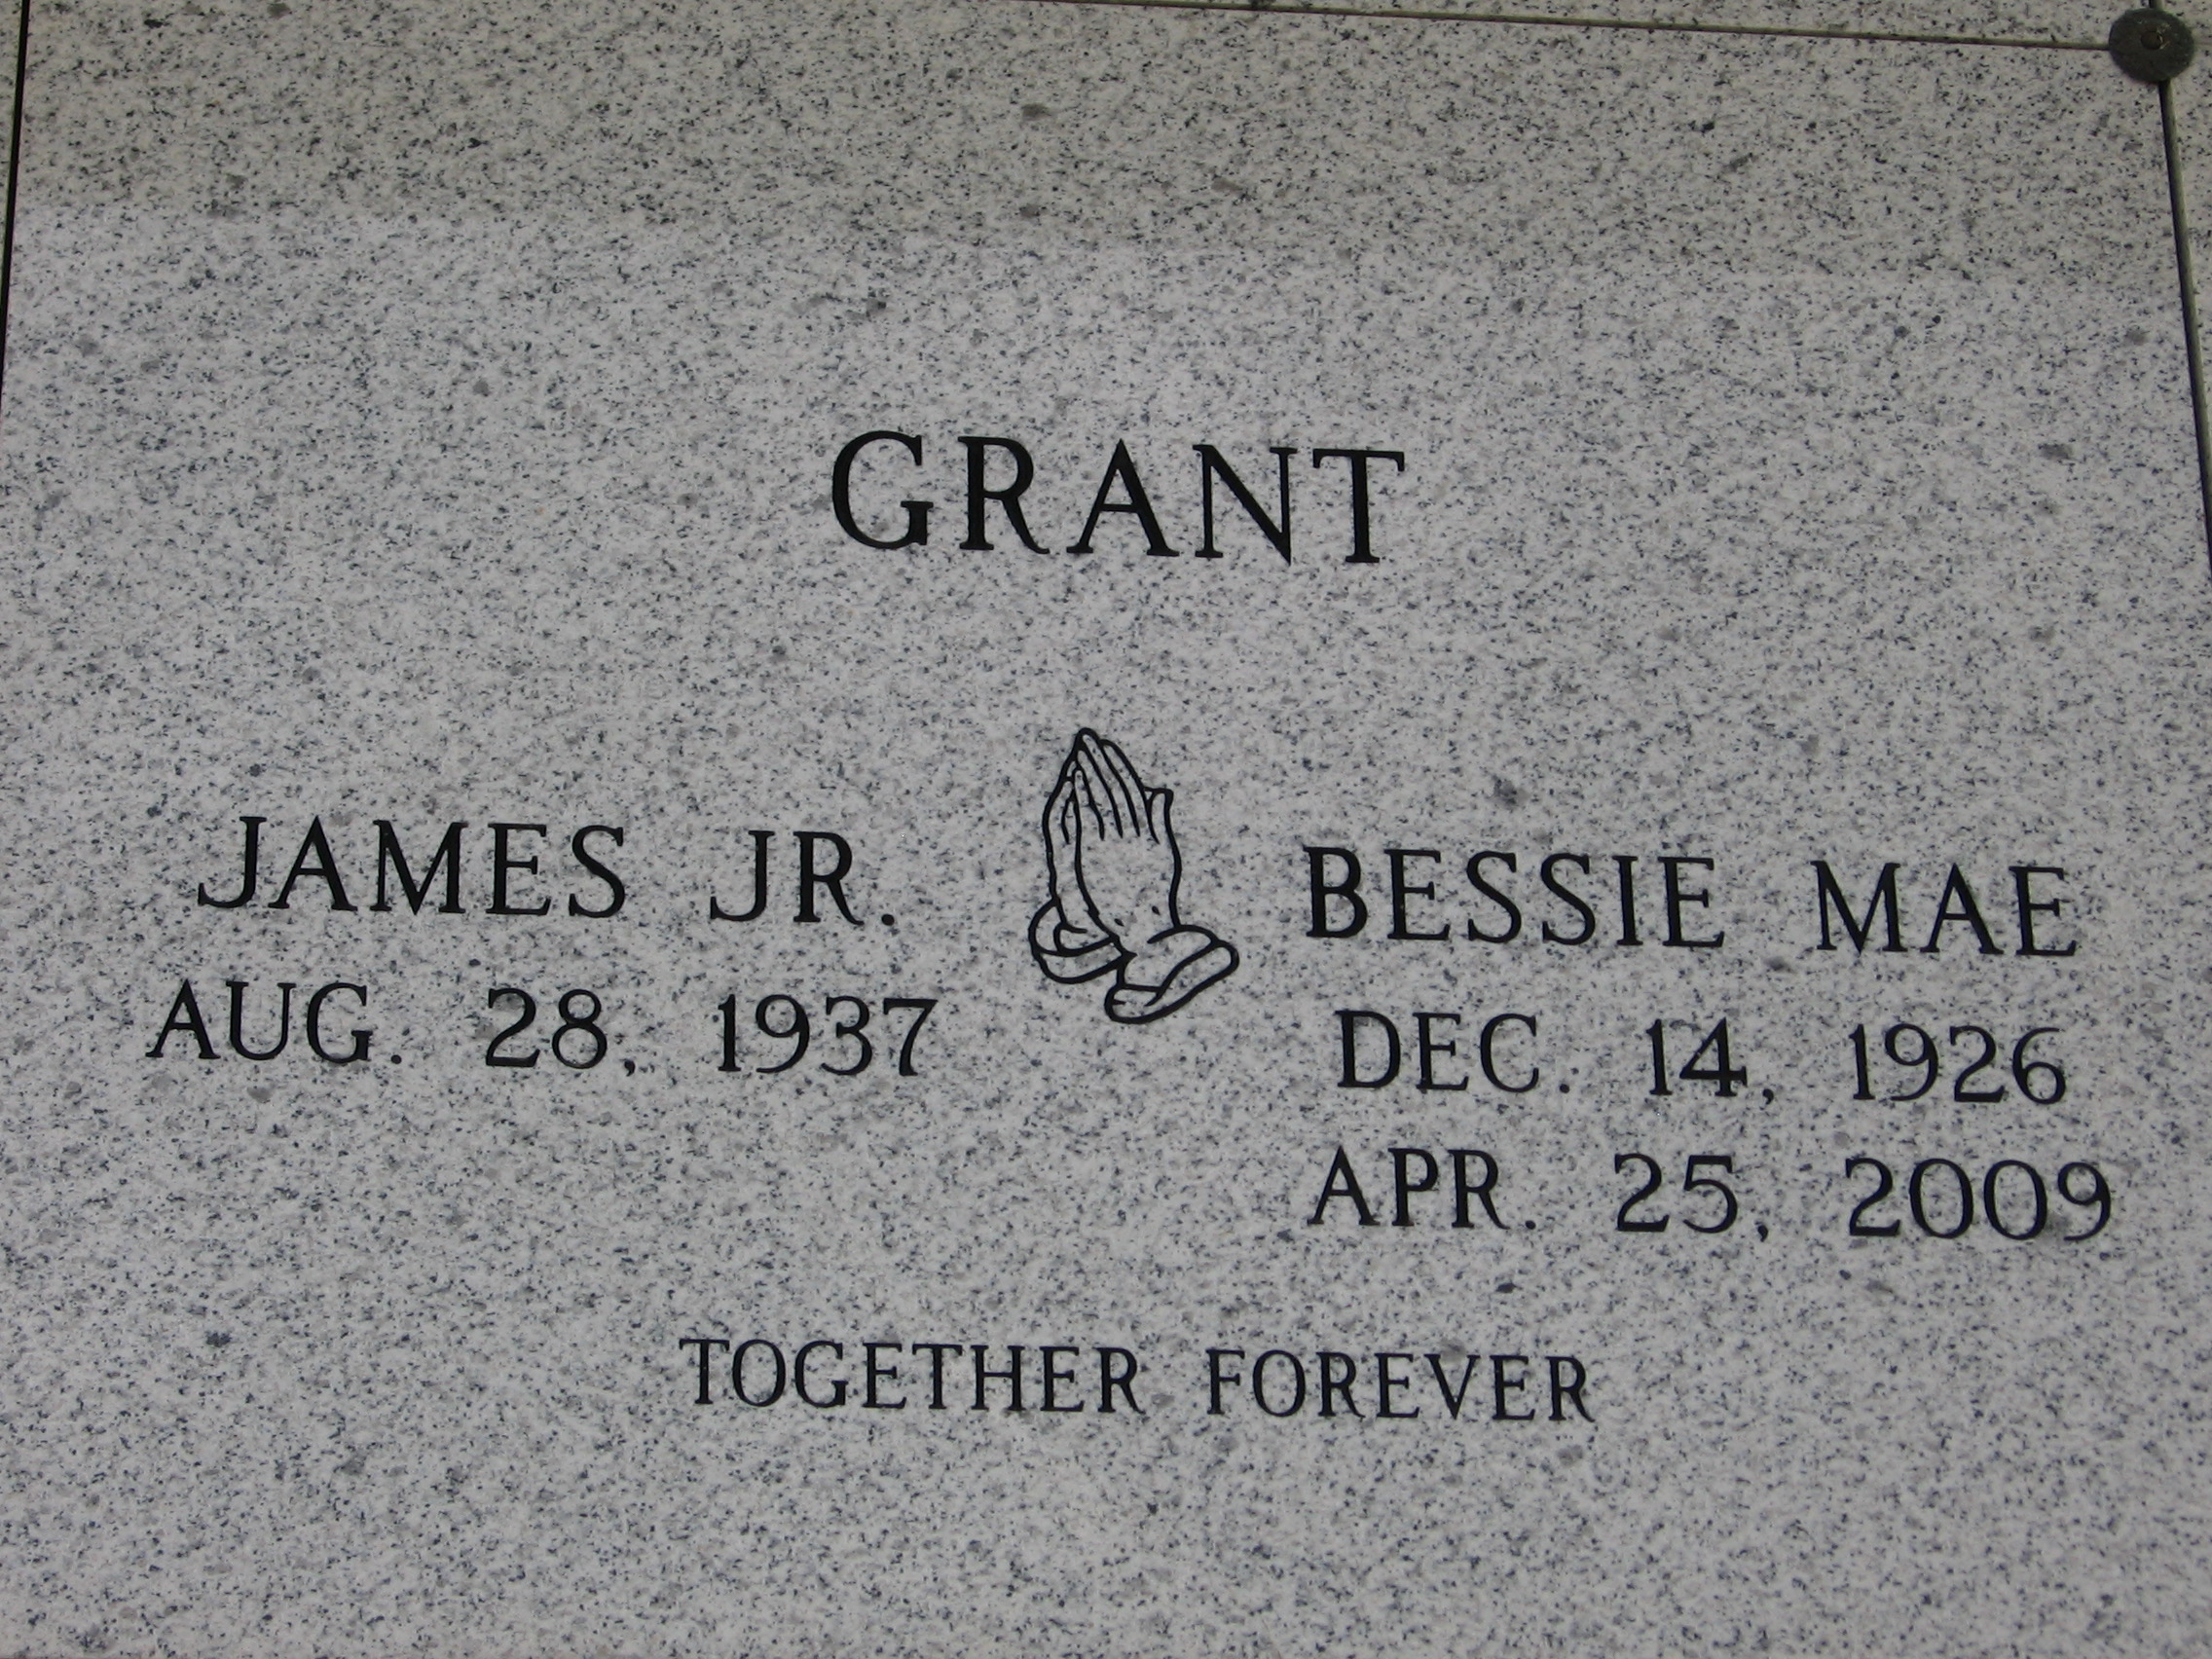 James Grant, Jr